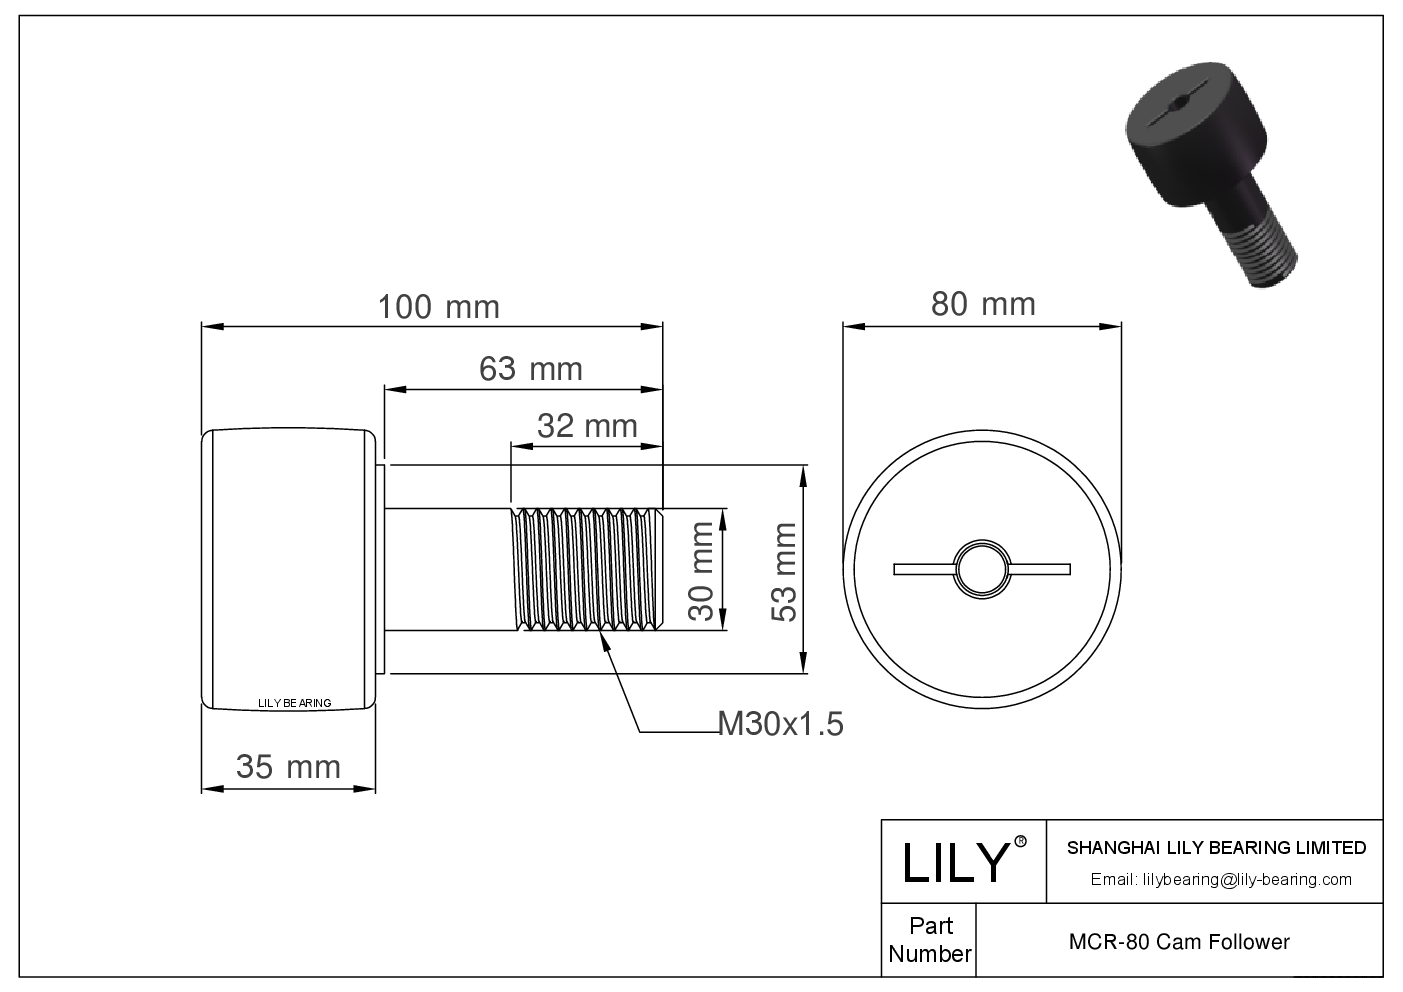 MCR-80 Stud Style Metric Cam Followers CAD图形